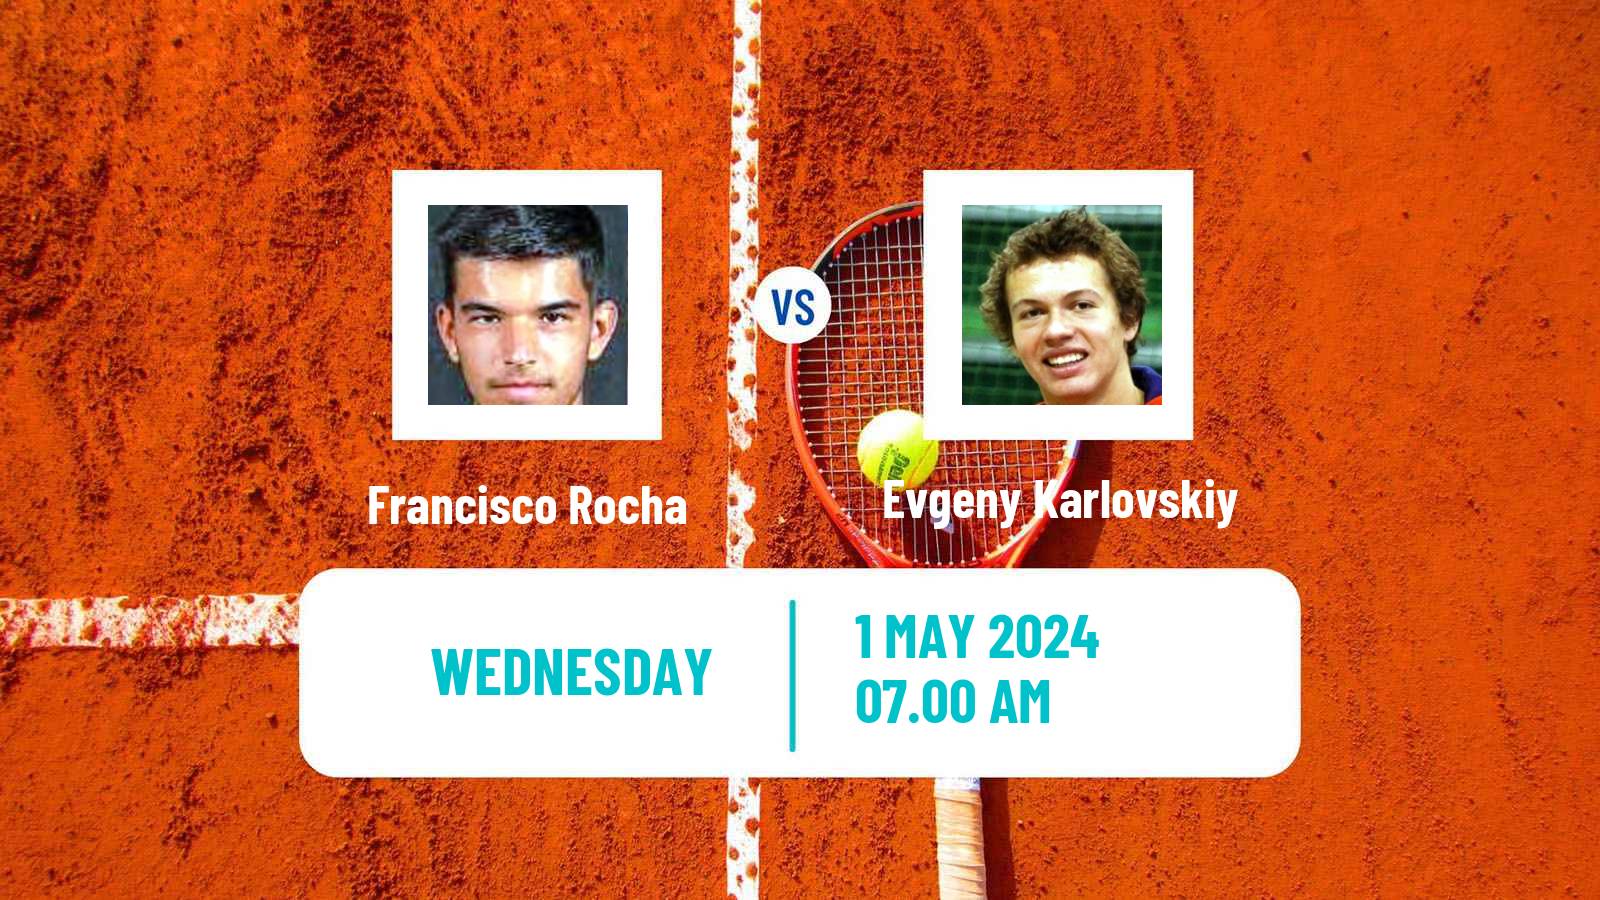 Tennis ITF M25 Sabadell Men Francisco Rocha - Evgeny Karlovskiy